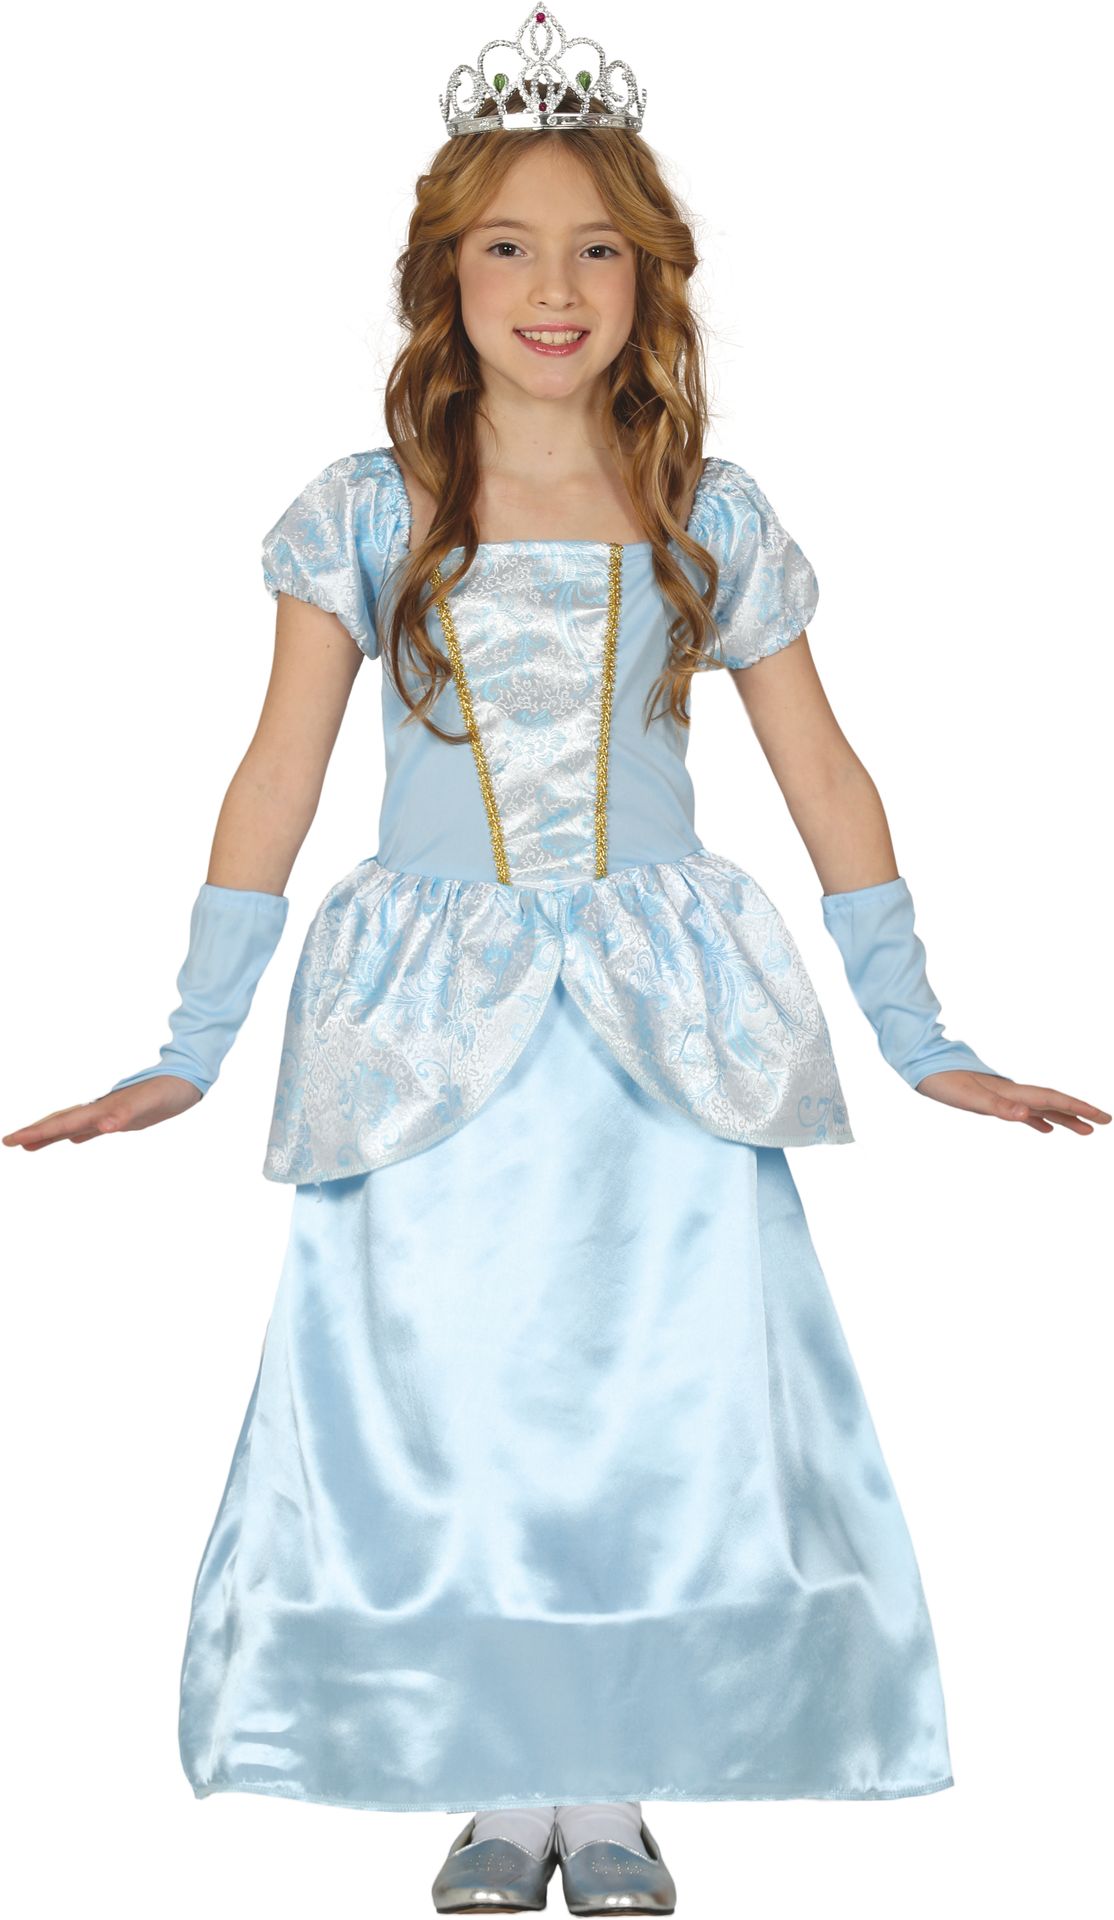 Blauwe prinsessen jurk meisje